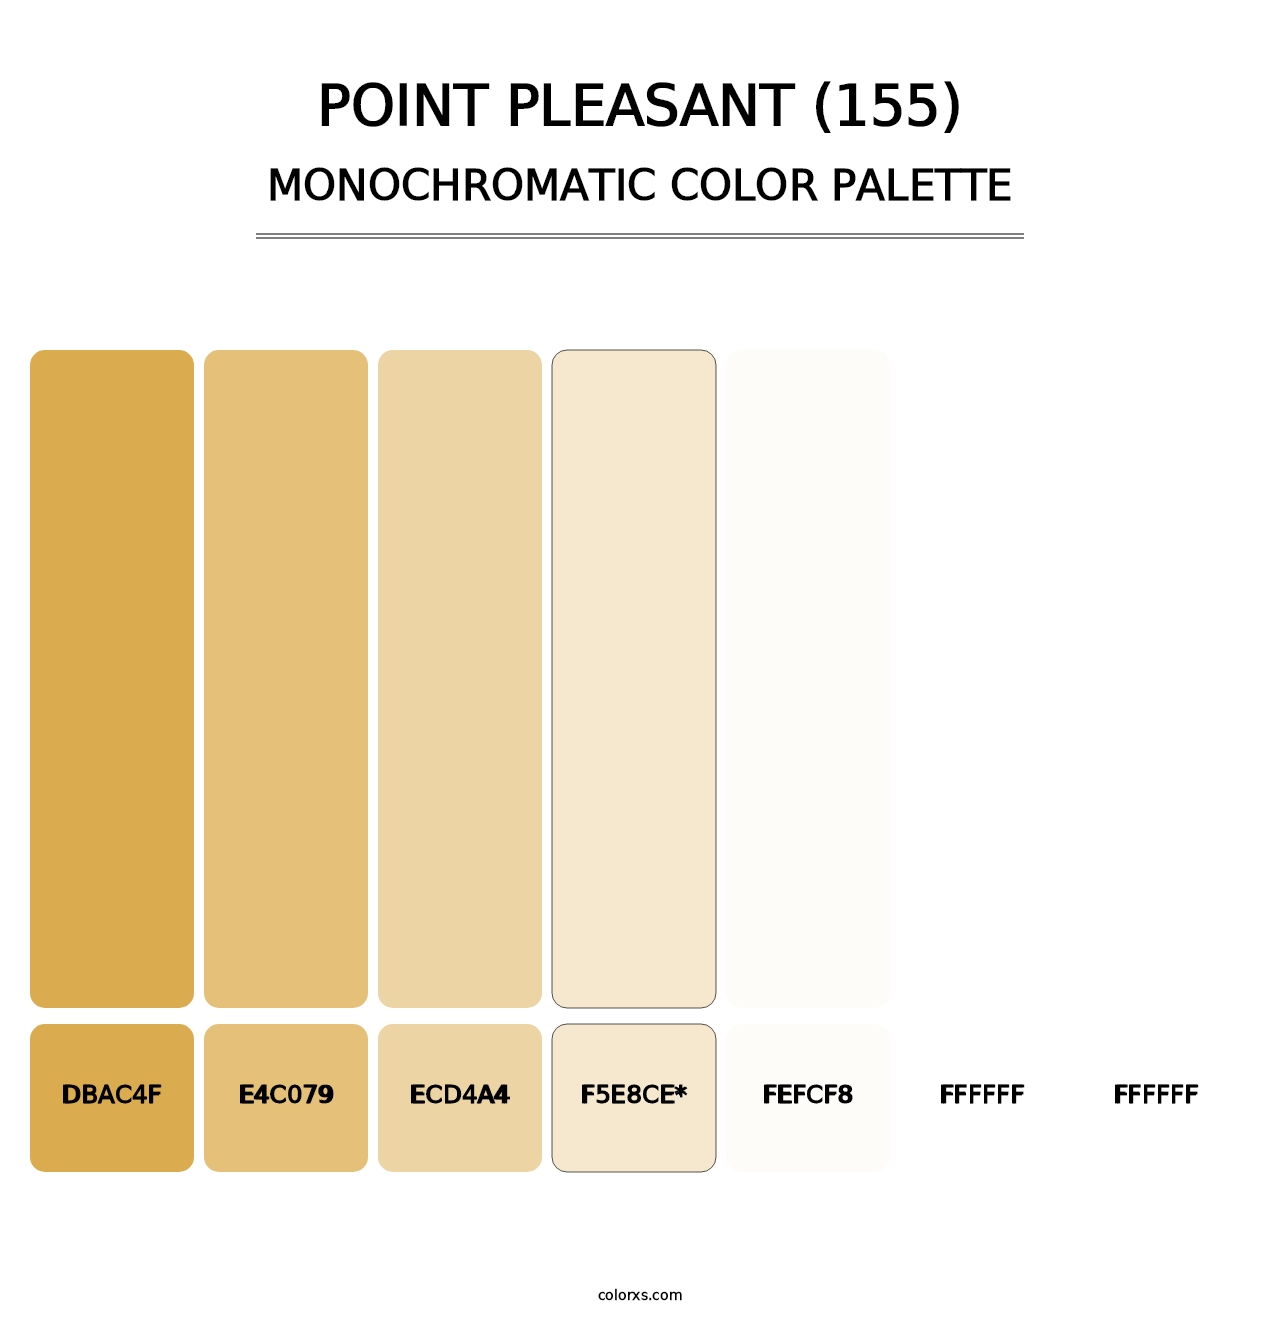 Point Pleasant (155) - Monochromatic Color Palette